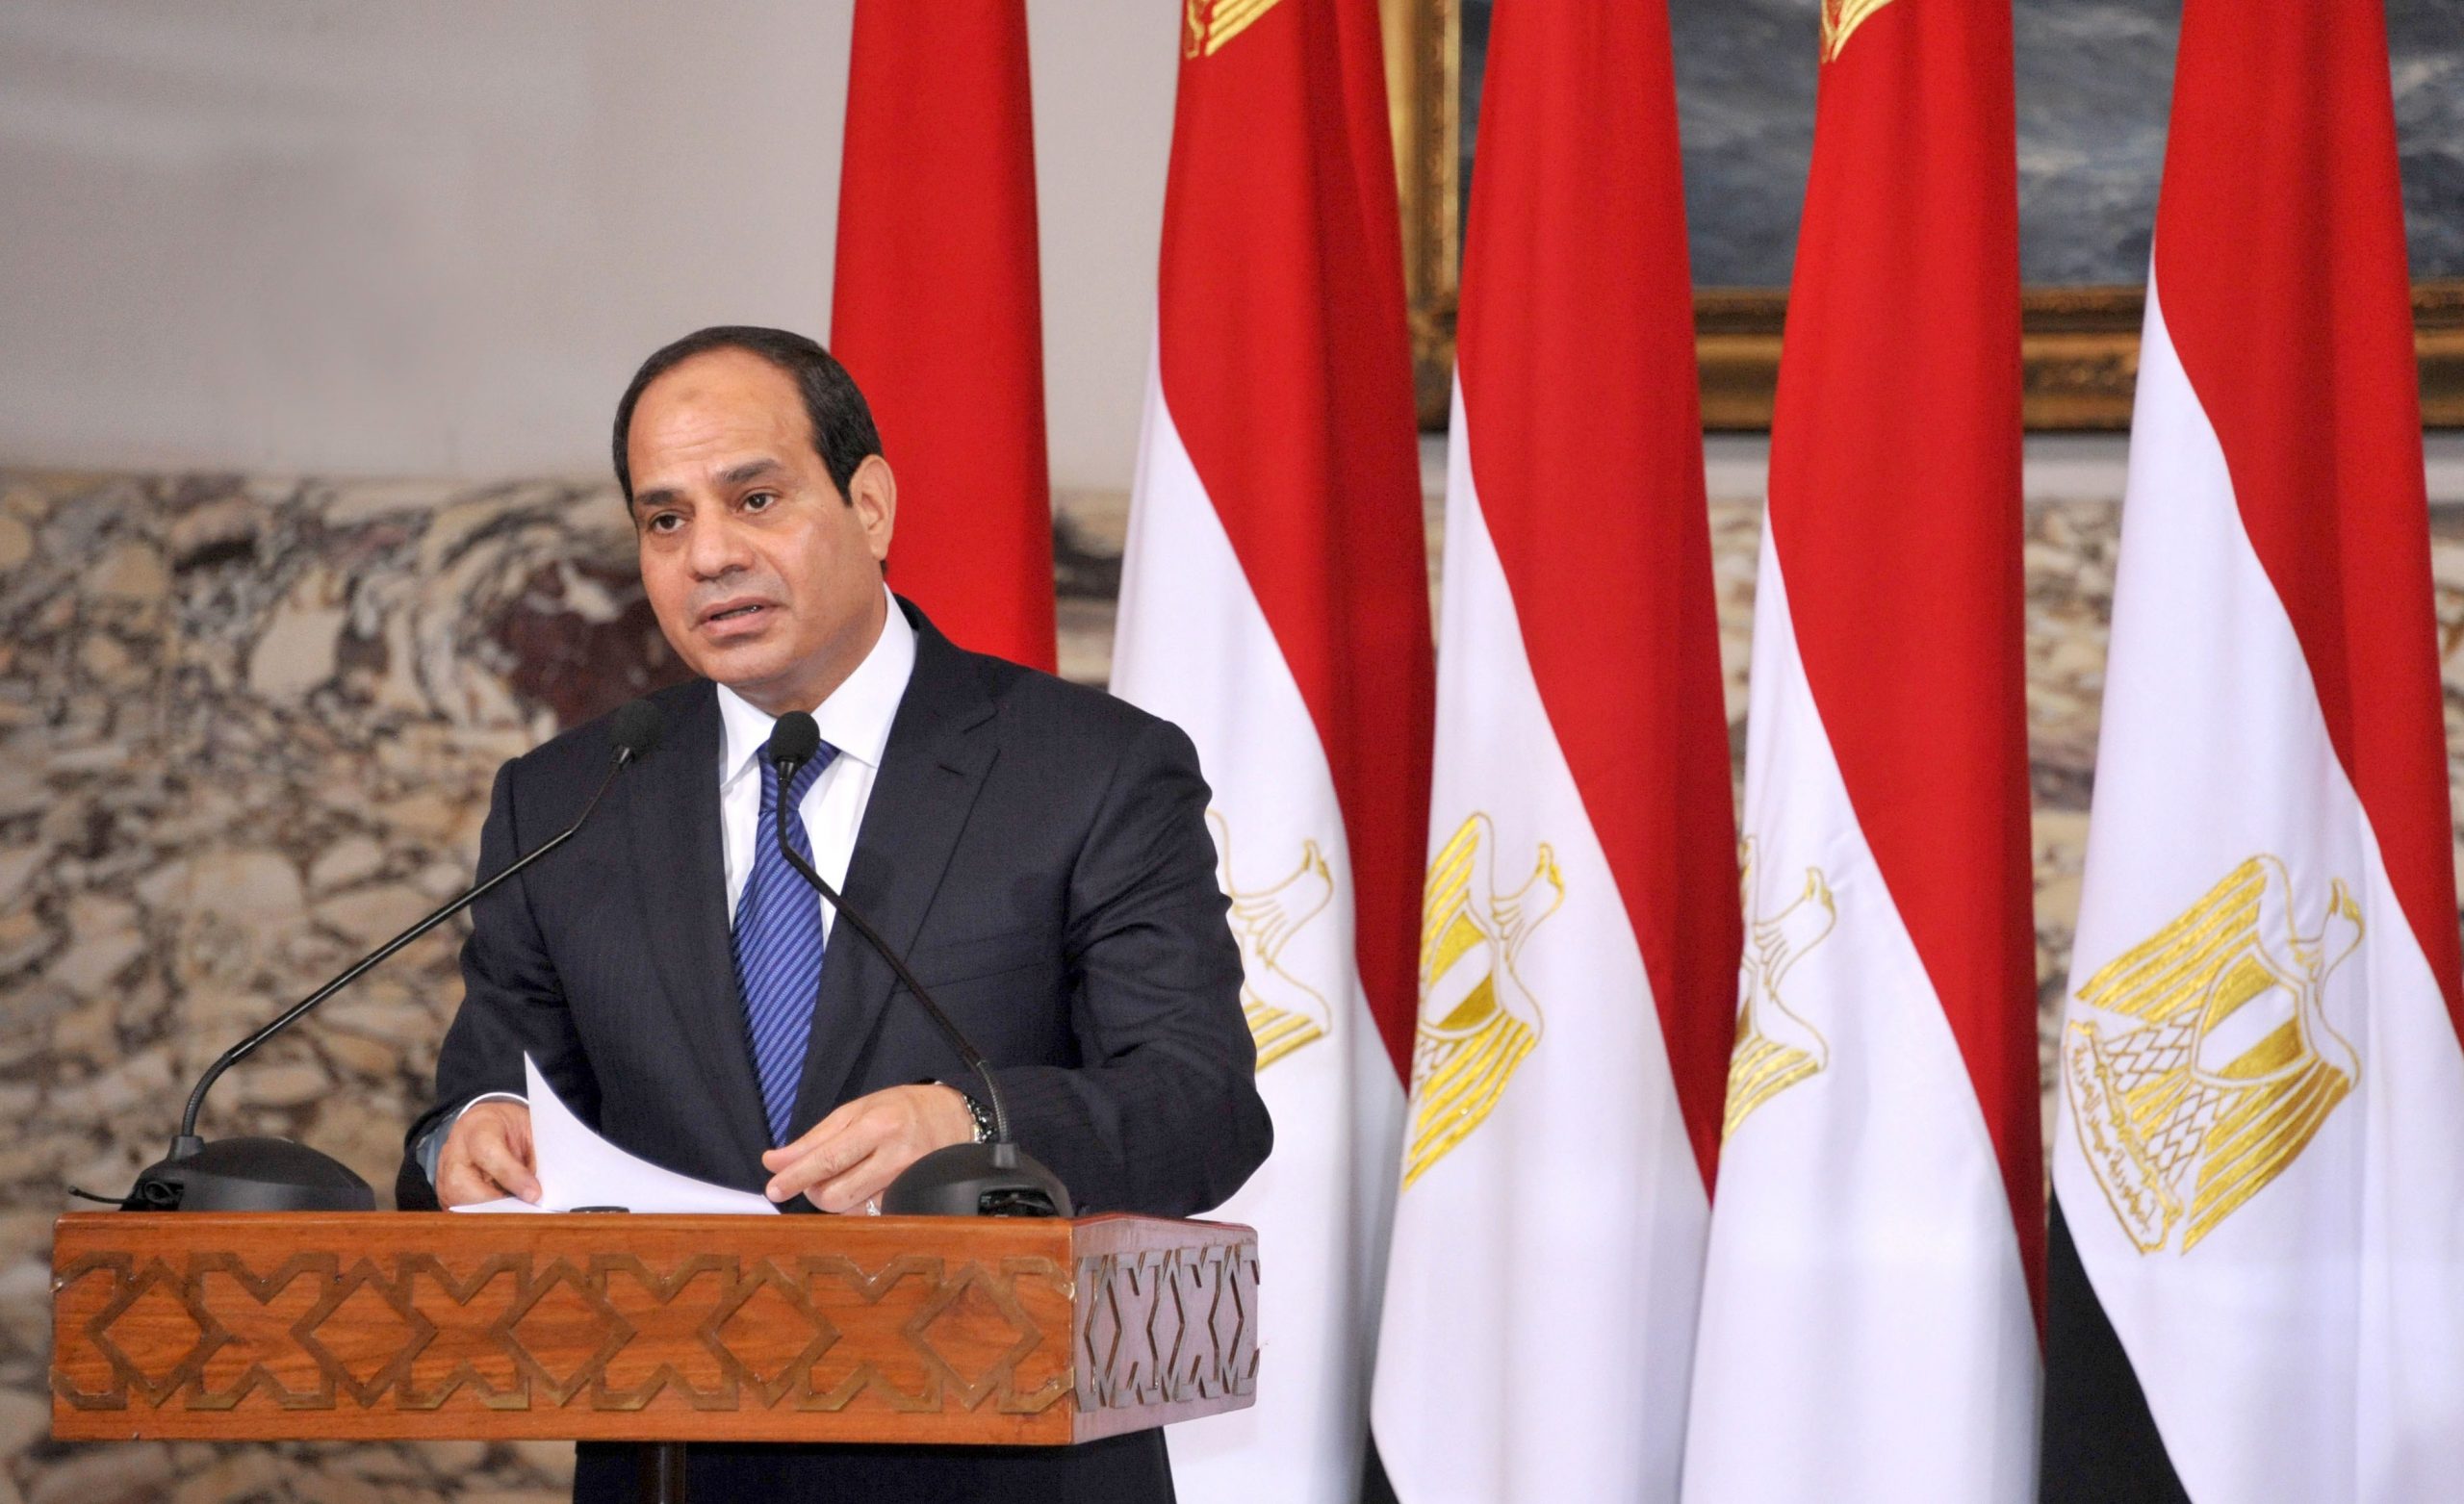 Egypt’s President Abdel Fattah al-Sisi